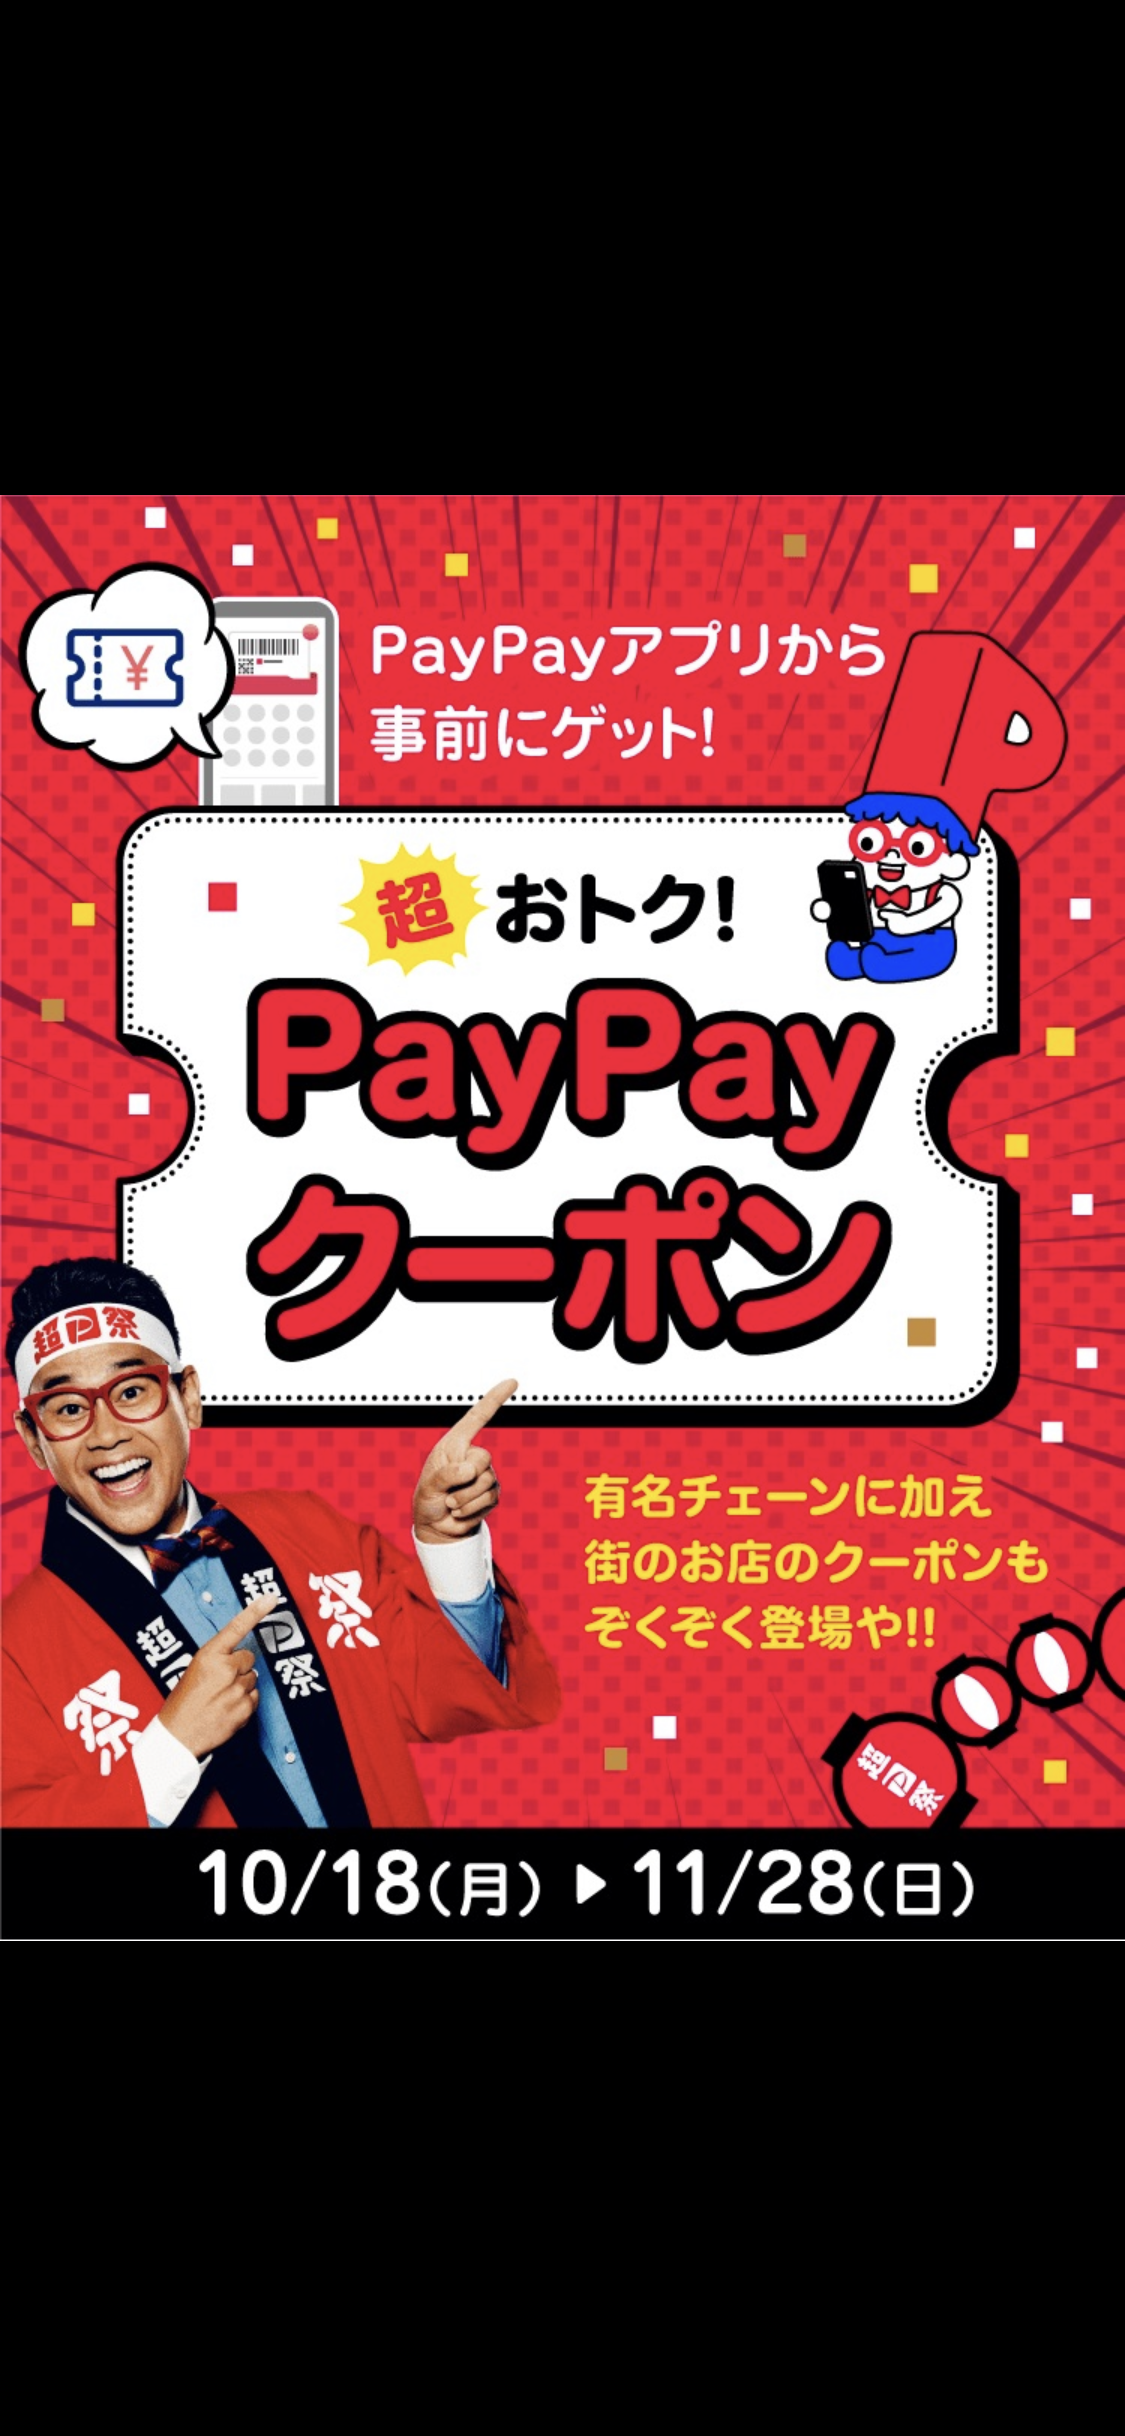 PayPayで当店のクーポンを事前にGetしPayPayでお会計すると、なんと、もれなくお会計金額の20%がPayPayボーナスとして戻ってきます!!